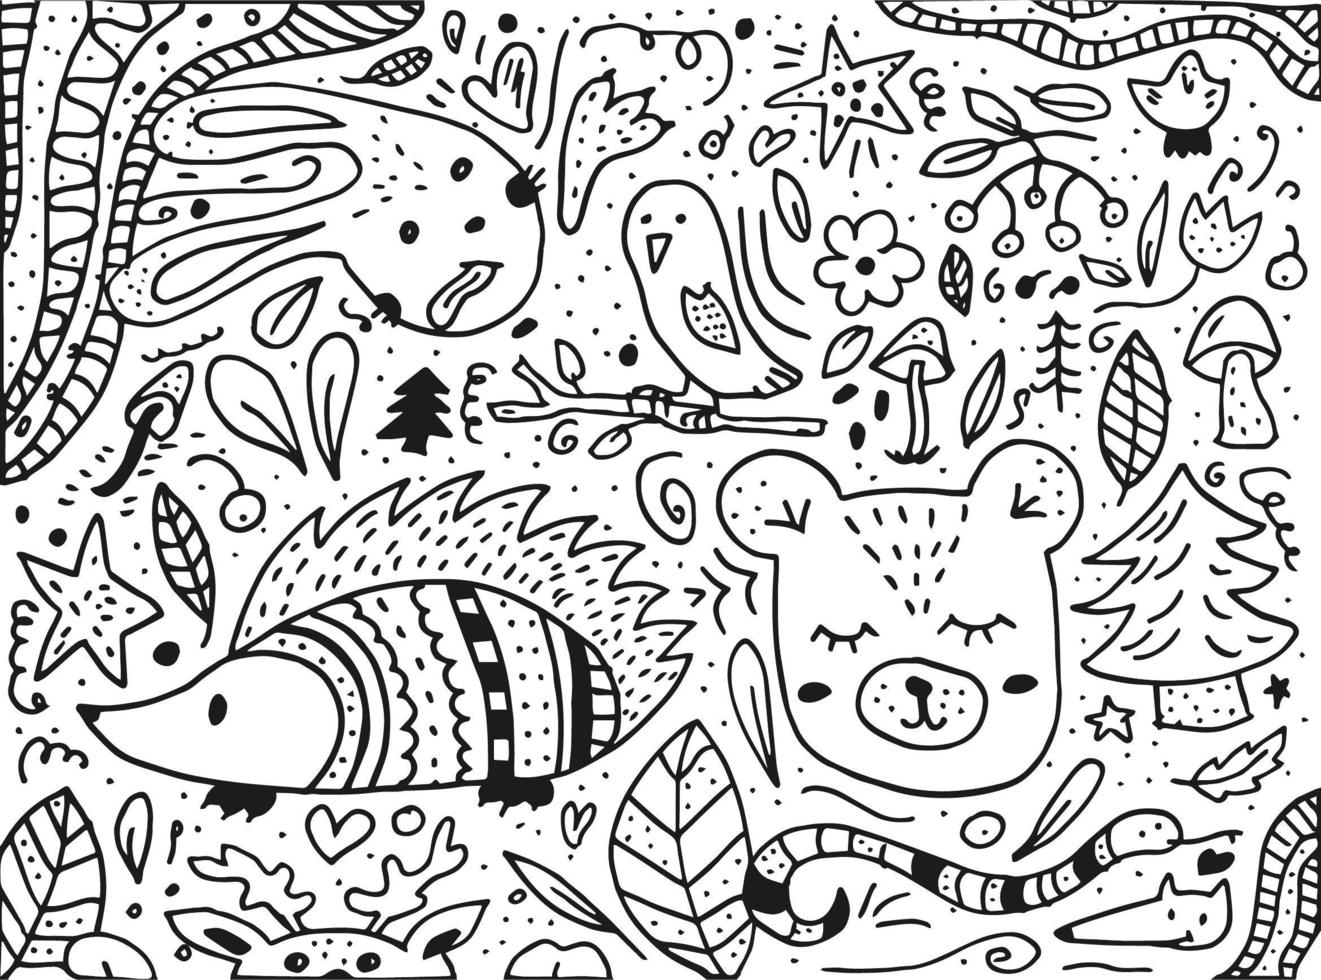 doodle stil handritad. natur, djur och element. vektor illustration. skogsbor. svartvit illustration.